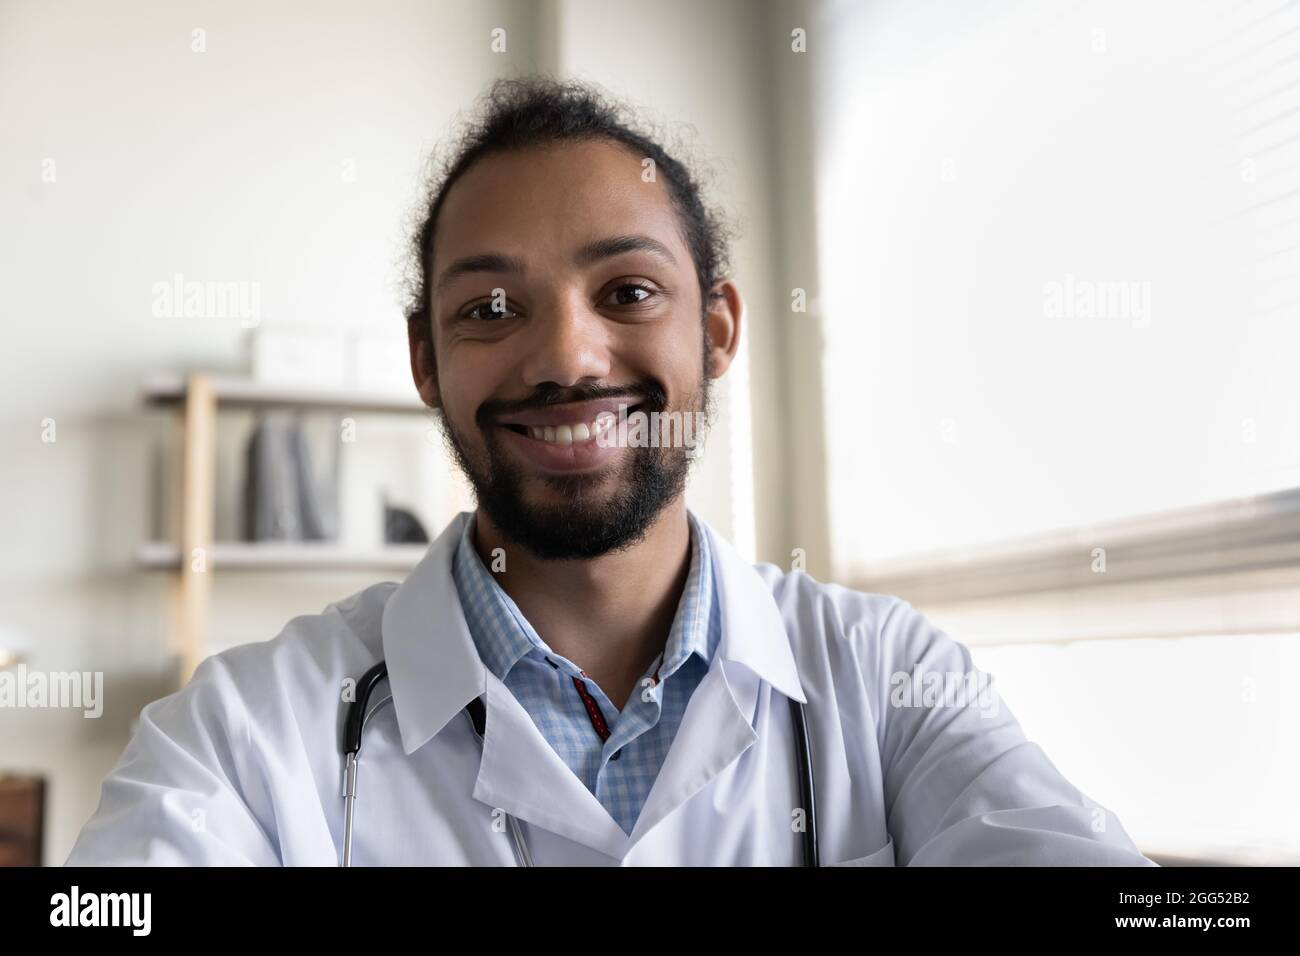 Lächelnder, freundlicher junger afroamerikanischer Arzt, der ein Videogespräch führt. Stockfoto